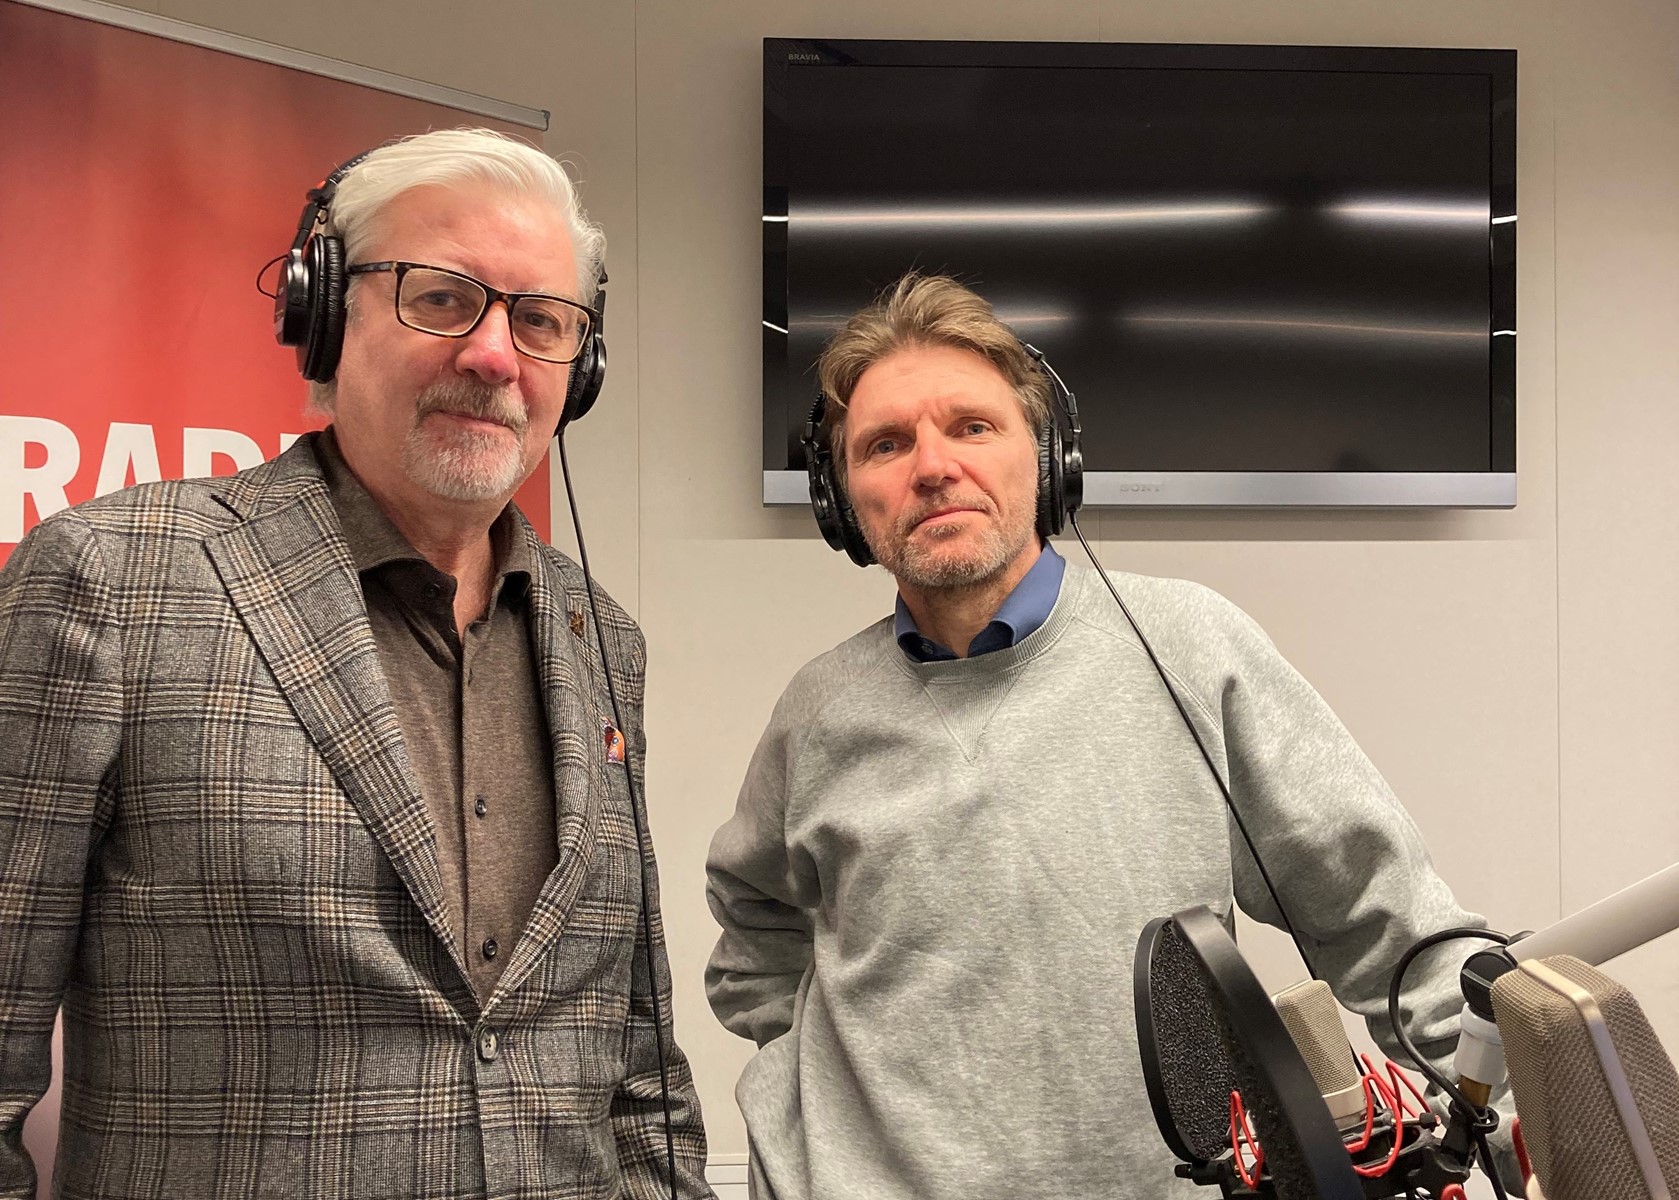 Henrik Schärfe (tv) og Martin Ringsmose (th) fortæller også i podcasten om et dilemma fra deres eget arbejdsliv. Foto: Karen Haaning.